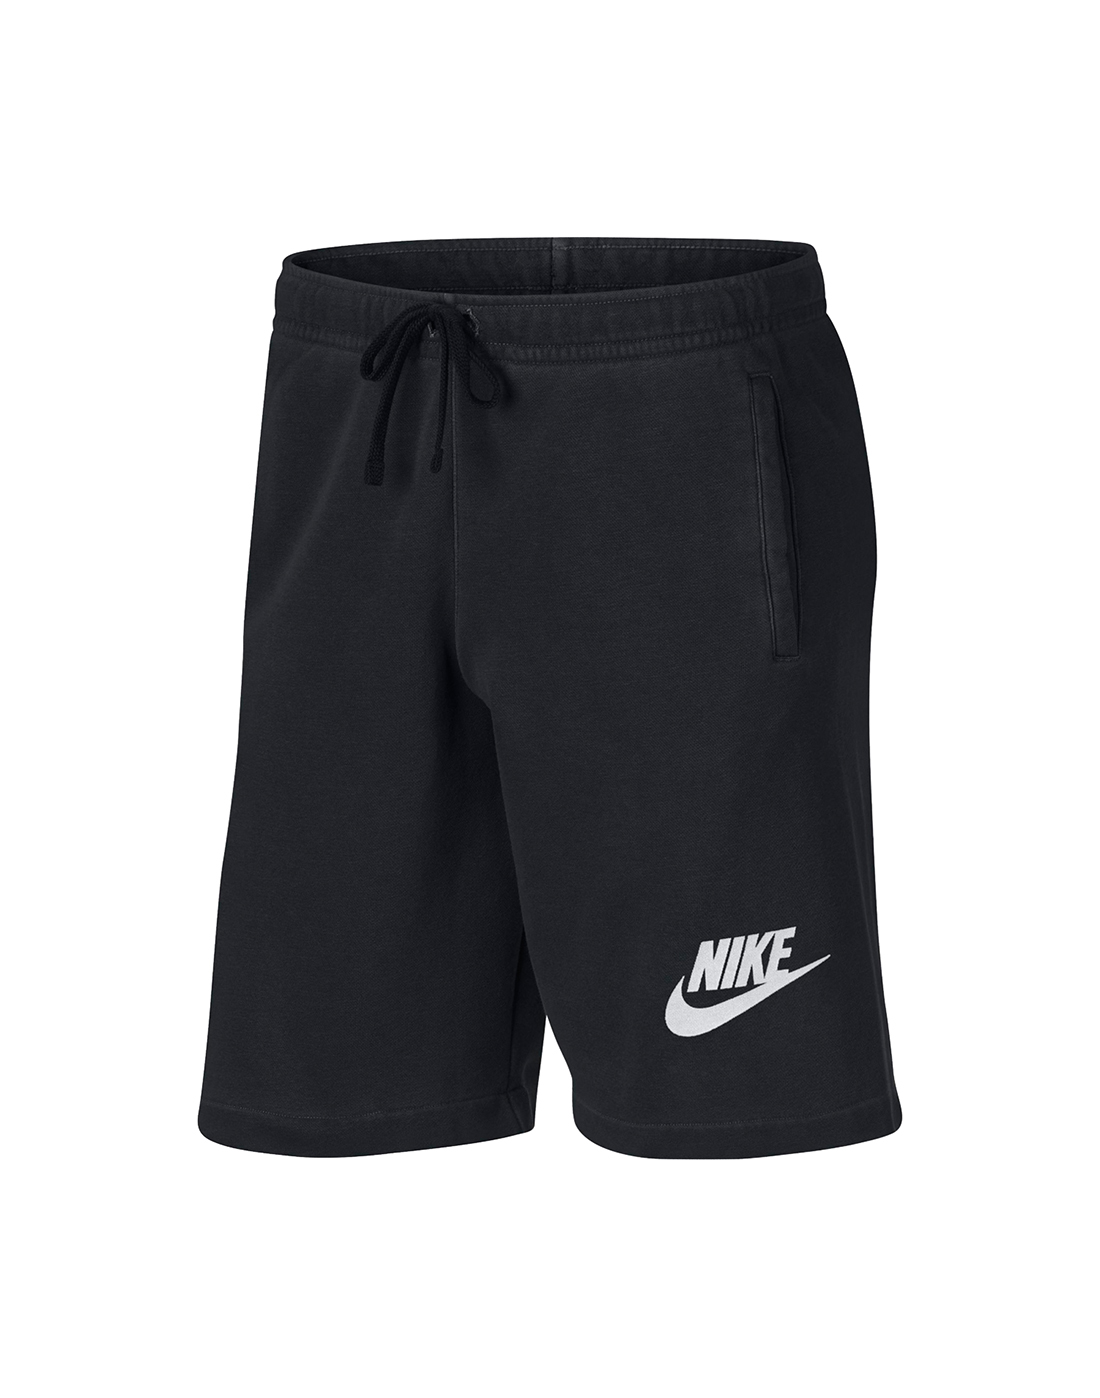 Nike Mens Short Wash - Black | Life Style Sports UK